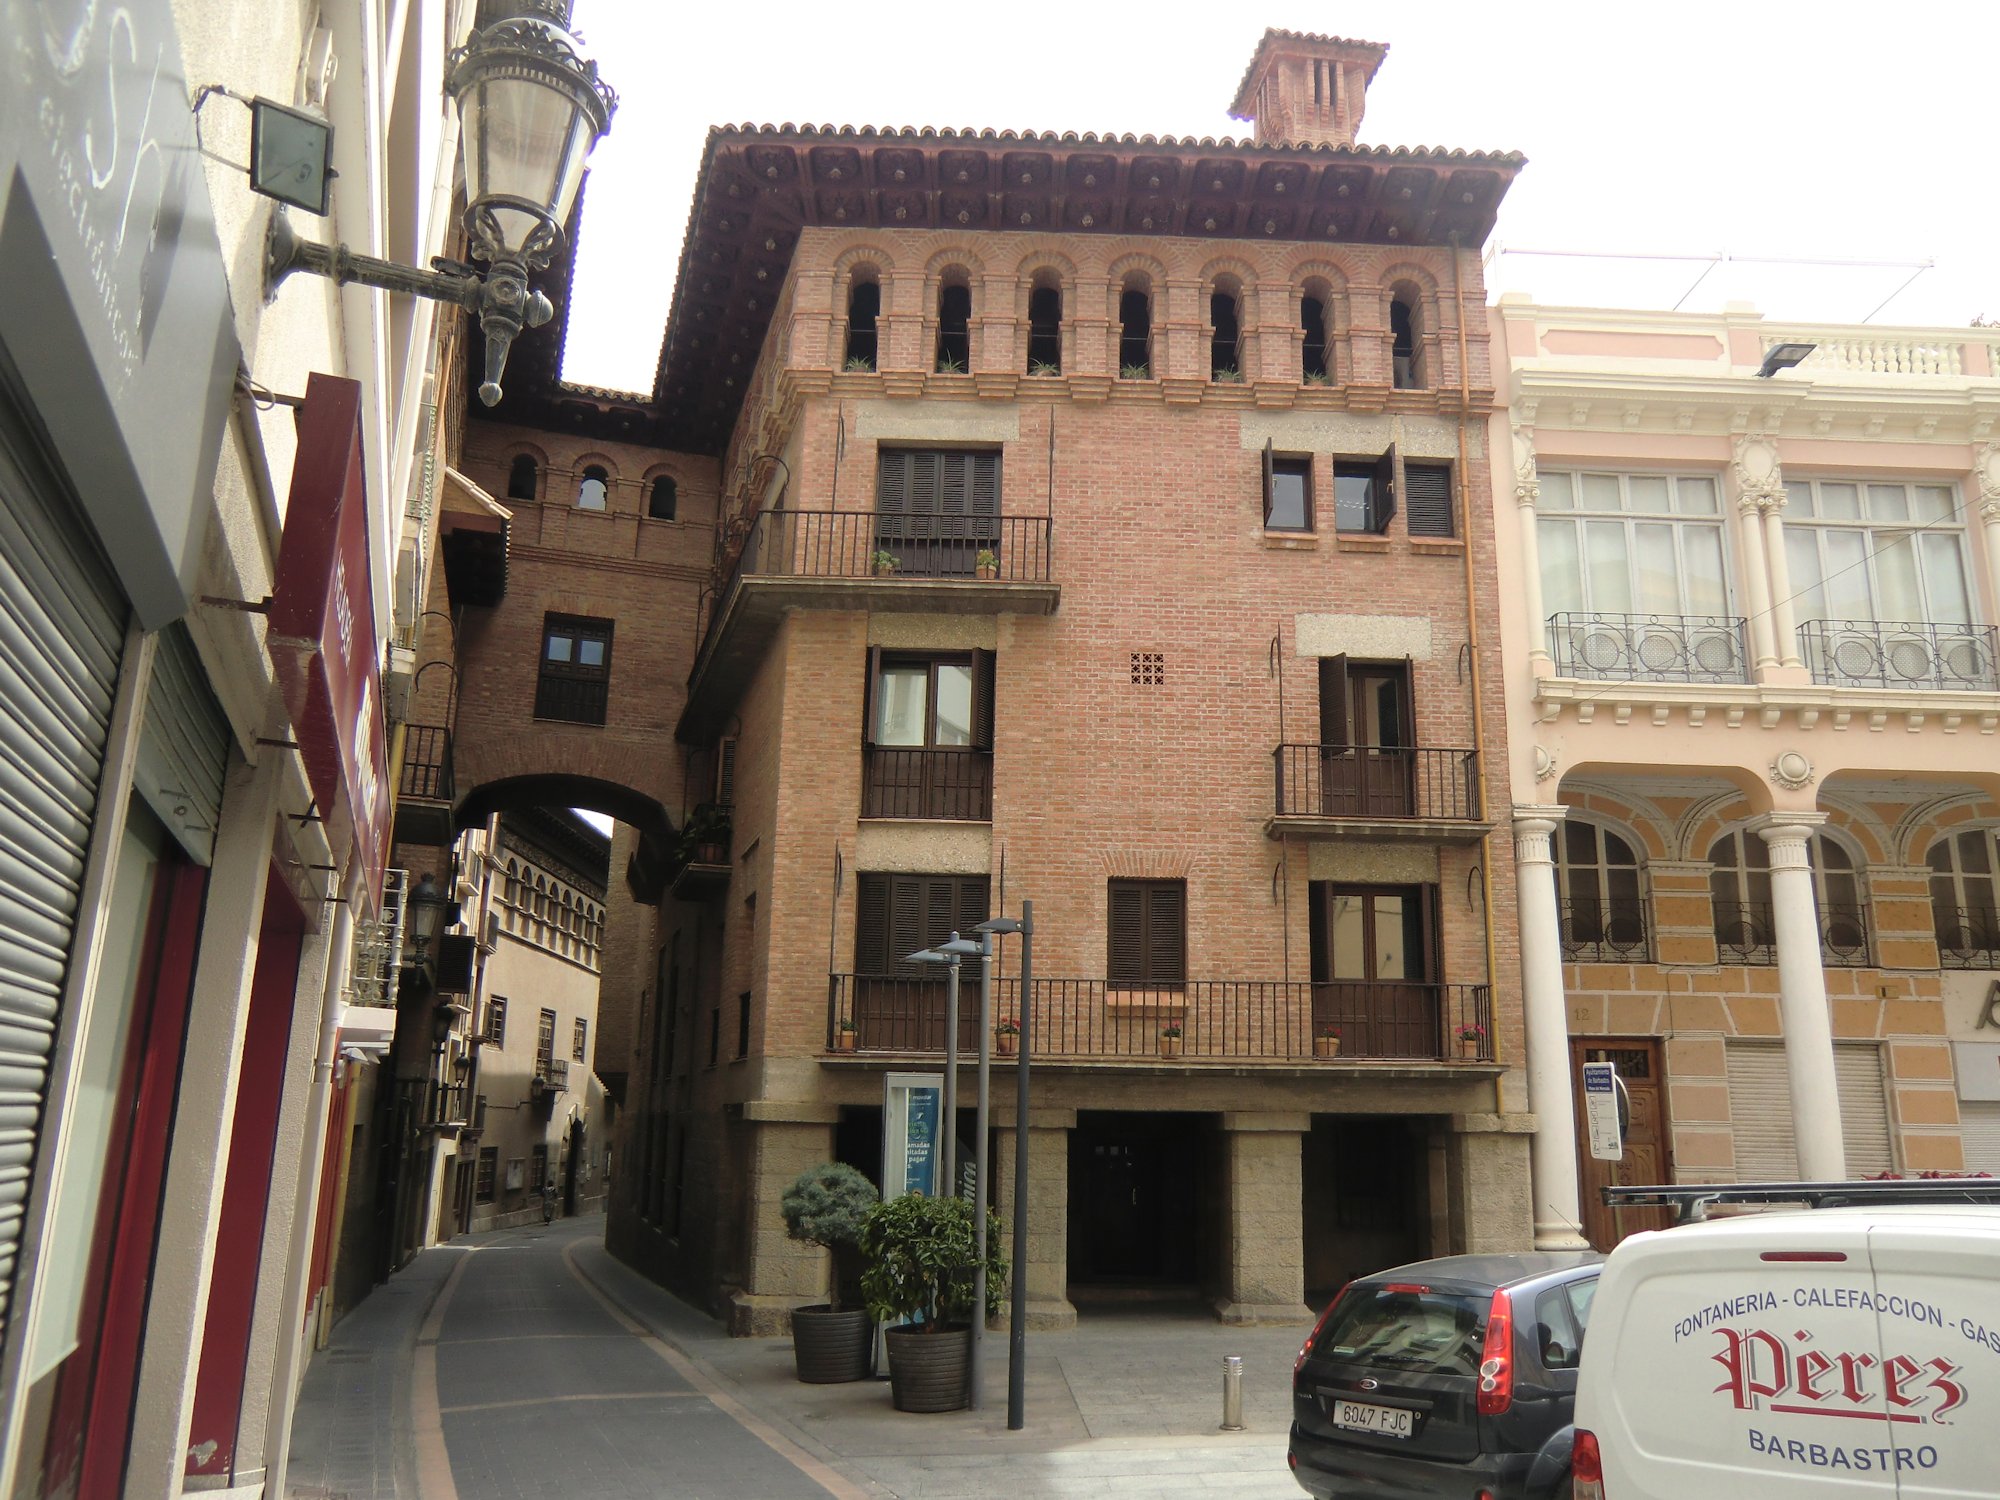 Das Elternhaus von Josemaría Escrivá de Balaguer am Marktplatz in Barbastro, heute mit dem Nachbarhaus verbunden und eine Einrichtung des Opus Dei, die nicht besucht werden kann